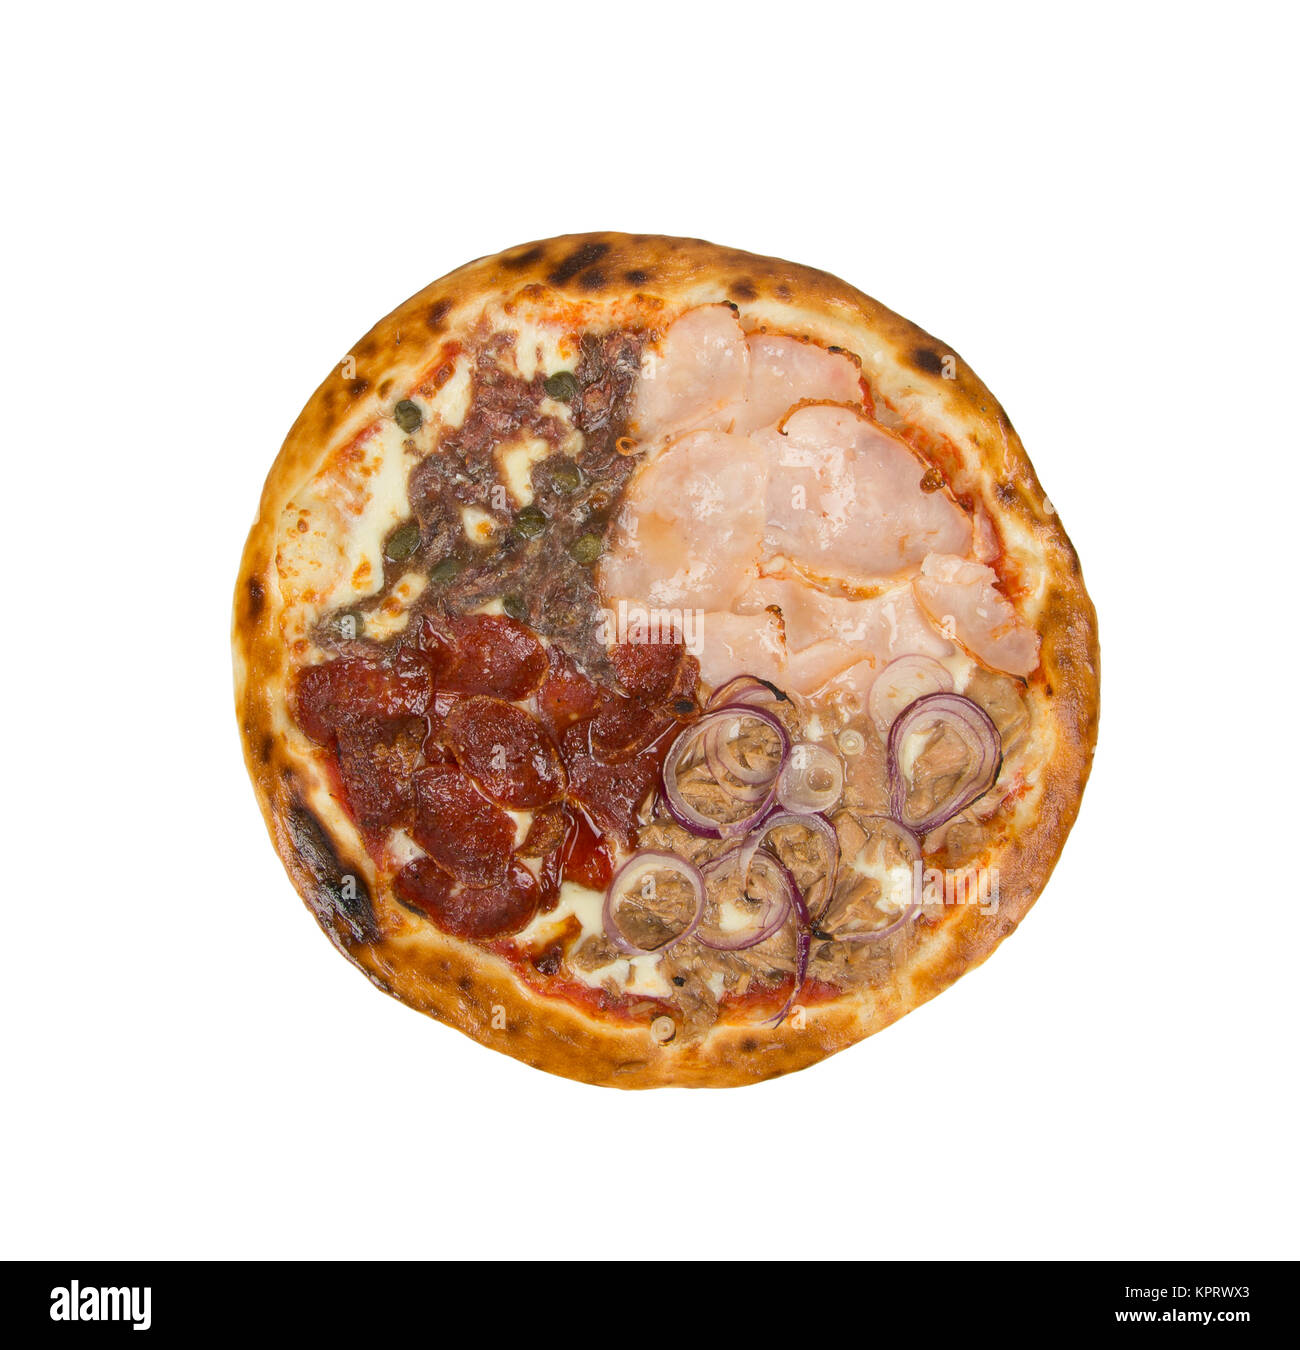 La pizza sur un fond blanc avec filet, fromage, sauce tomate, les épices et le piment de cayenne. Banque D'Images